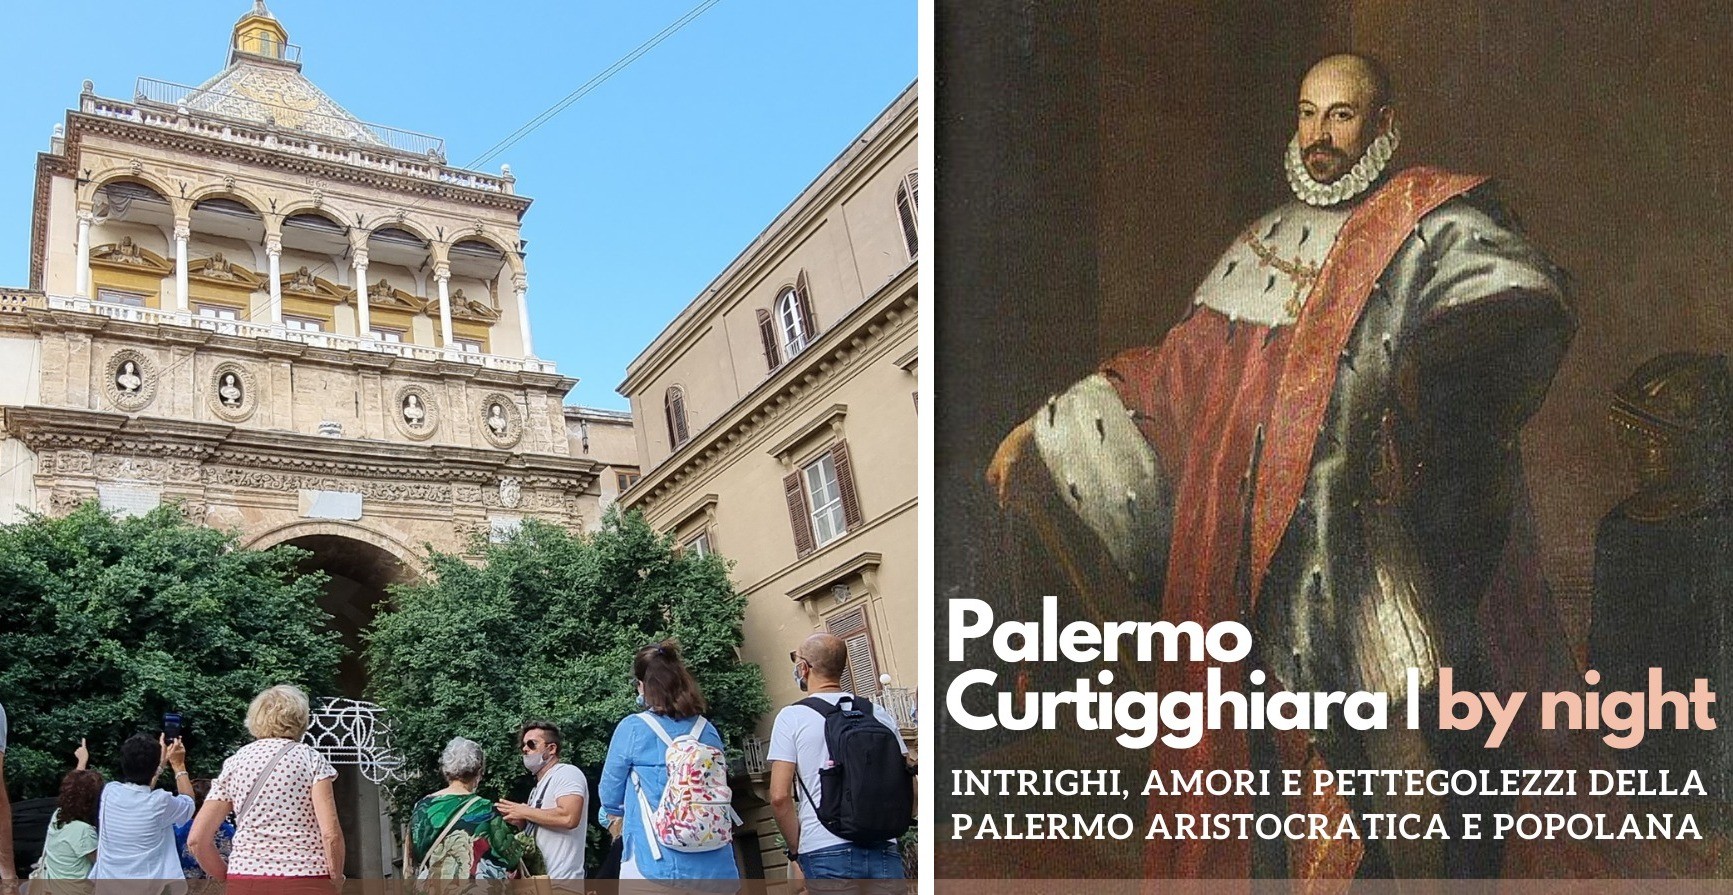 TOUR PALERMO 'CURTIGGHIARA' - Amori e pettegolezzi della Palermo aristocratica